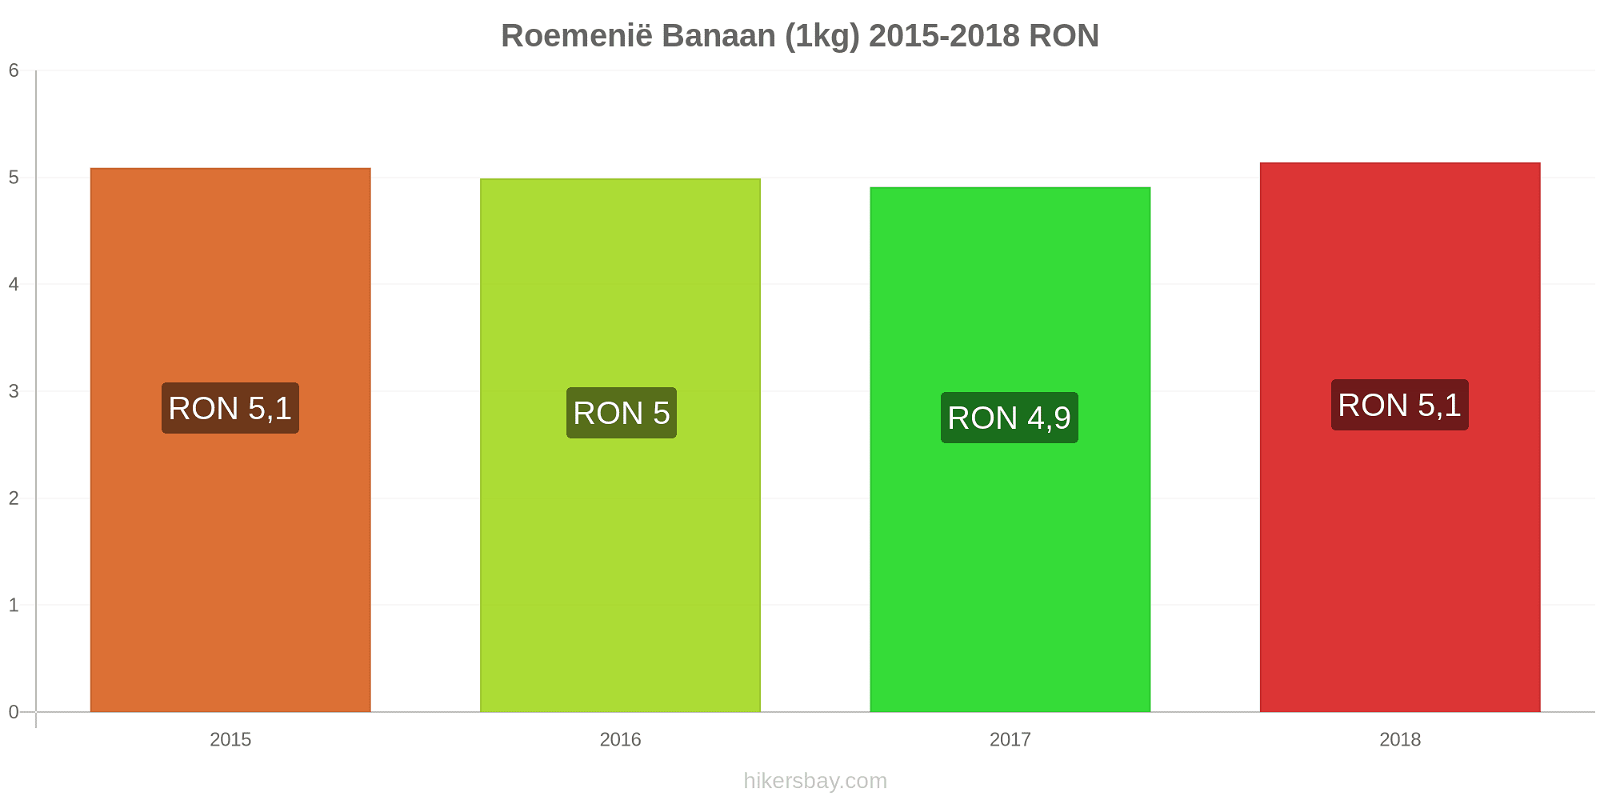 Roemenië prijswijzigingen Bananen (1kg) hikersbay.com